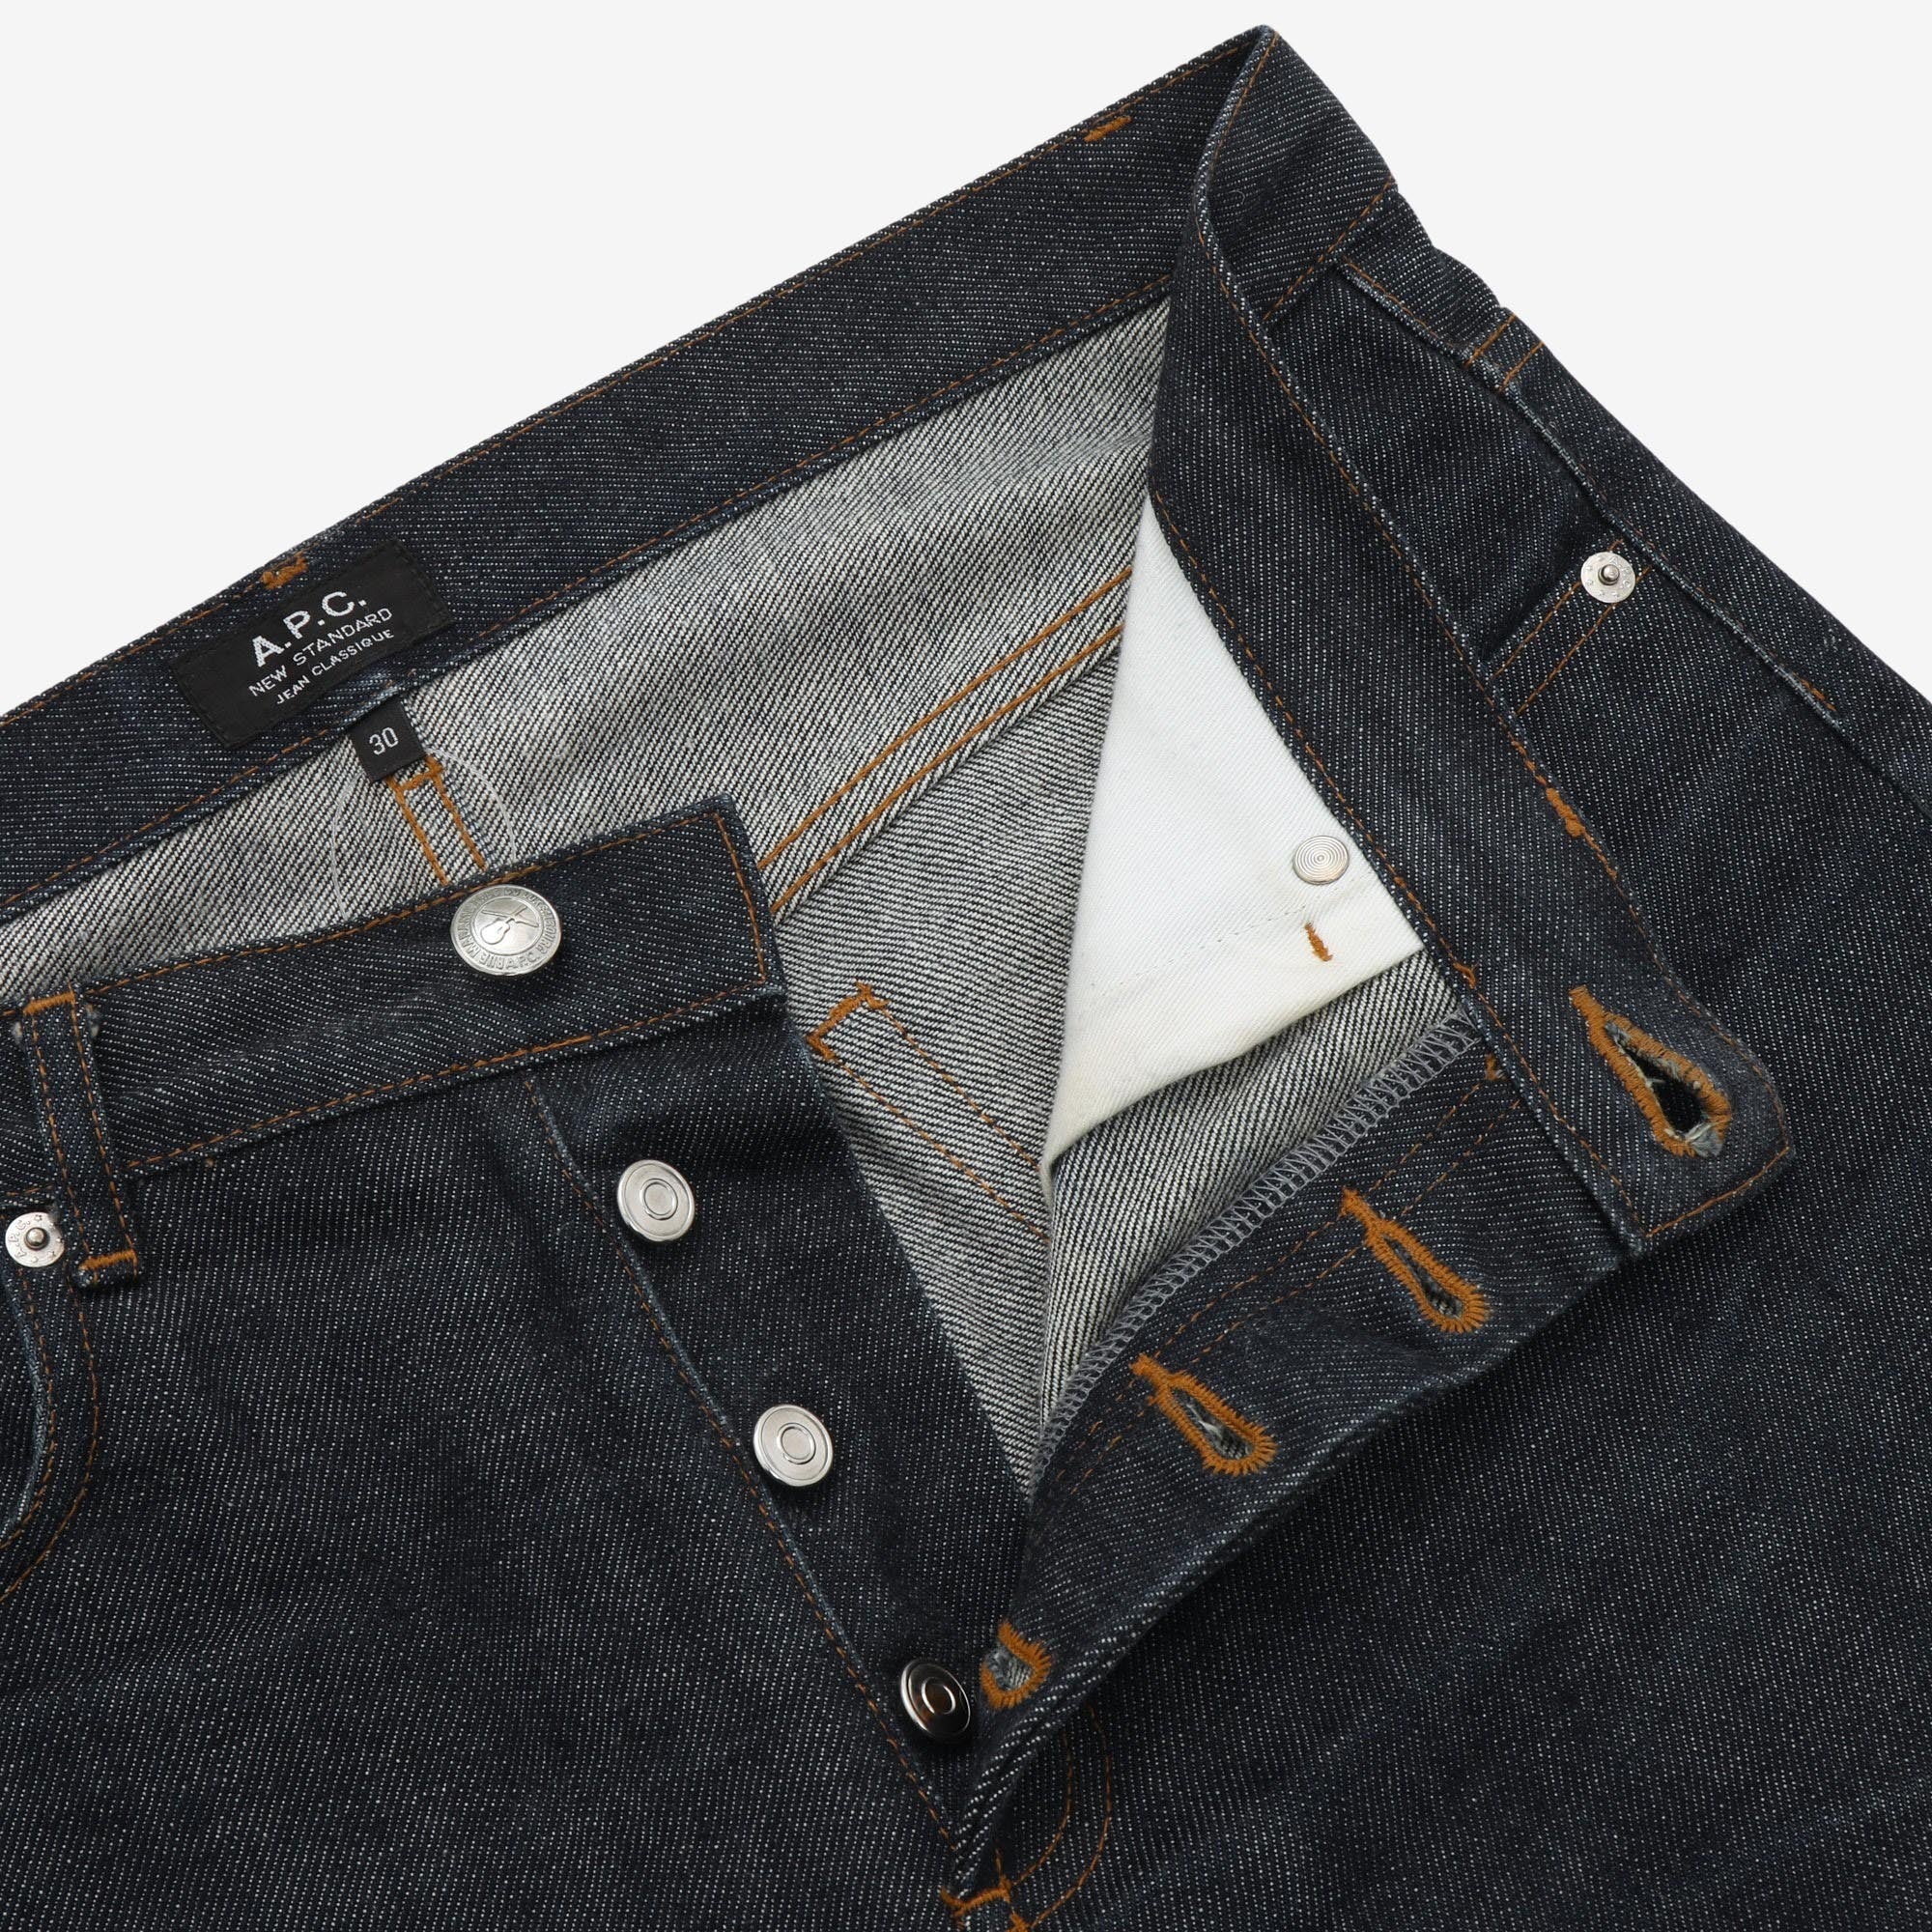 New Standard Jeans (30W x 34L)